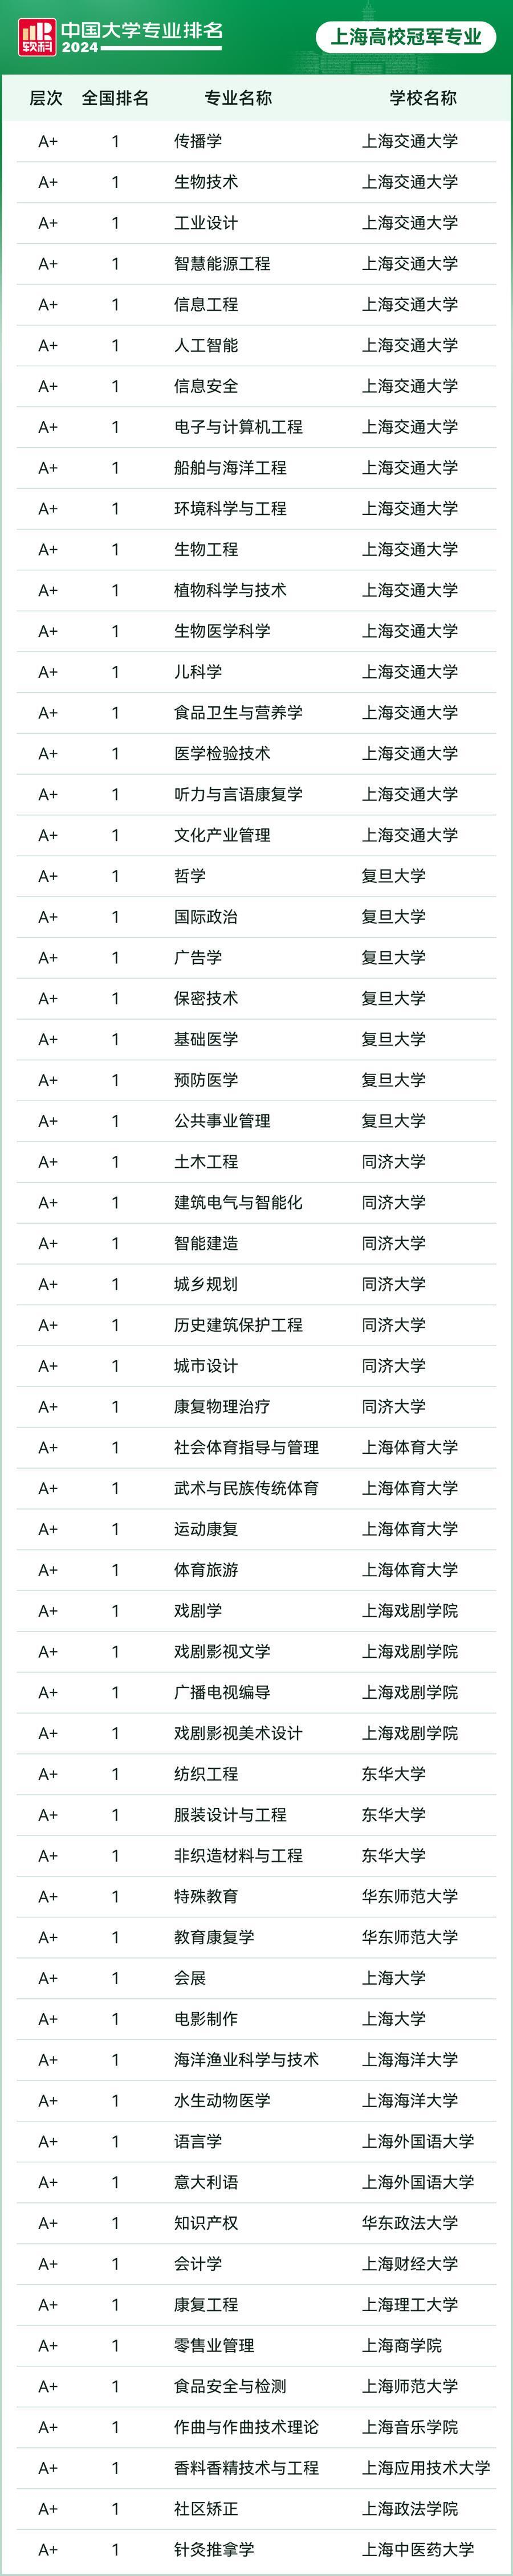 论具体专业,大学排行有变:上海这60个专业排名全国第一,a 专业235个